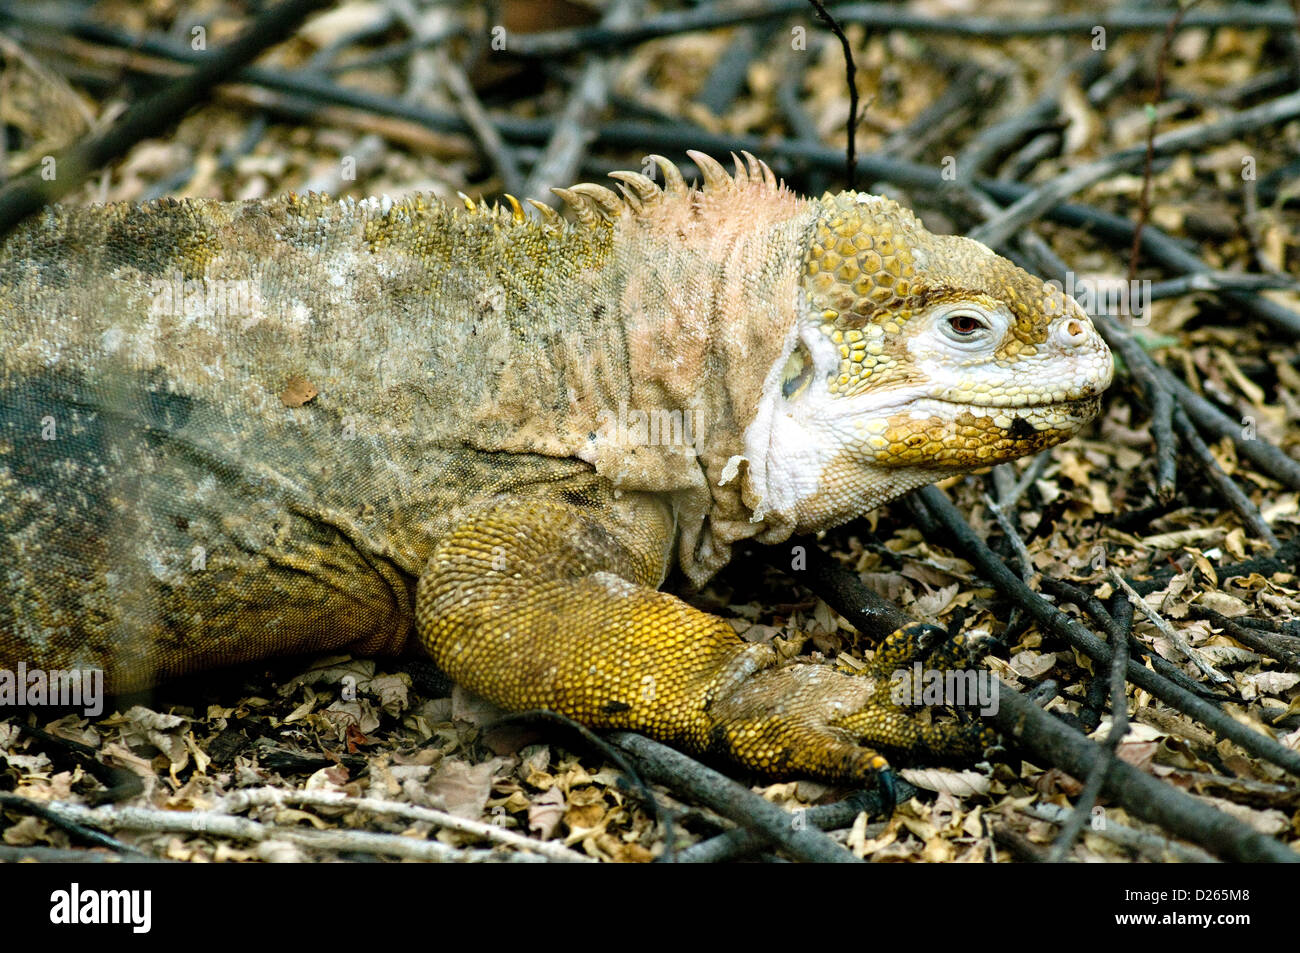 Un nesting terra Galapagos iguana, monster lucertola endemica le fantastiche isole, sembra essere rinnova la sua pelle squamosa Foto Stock